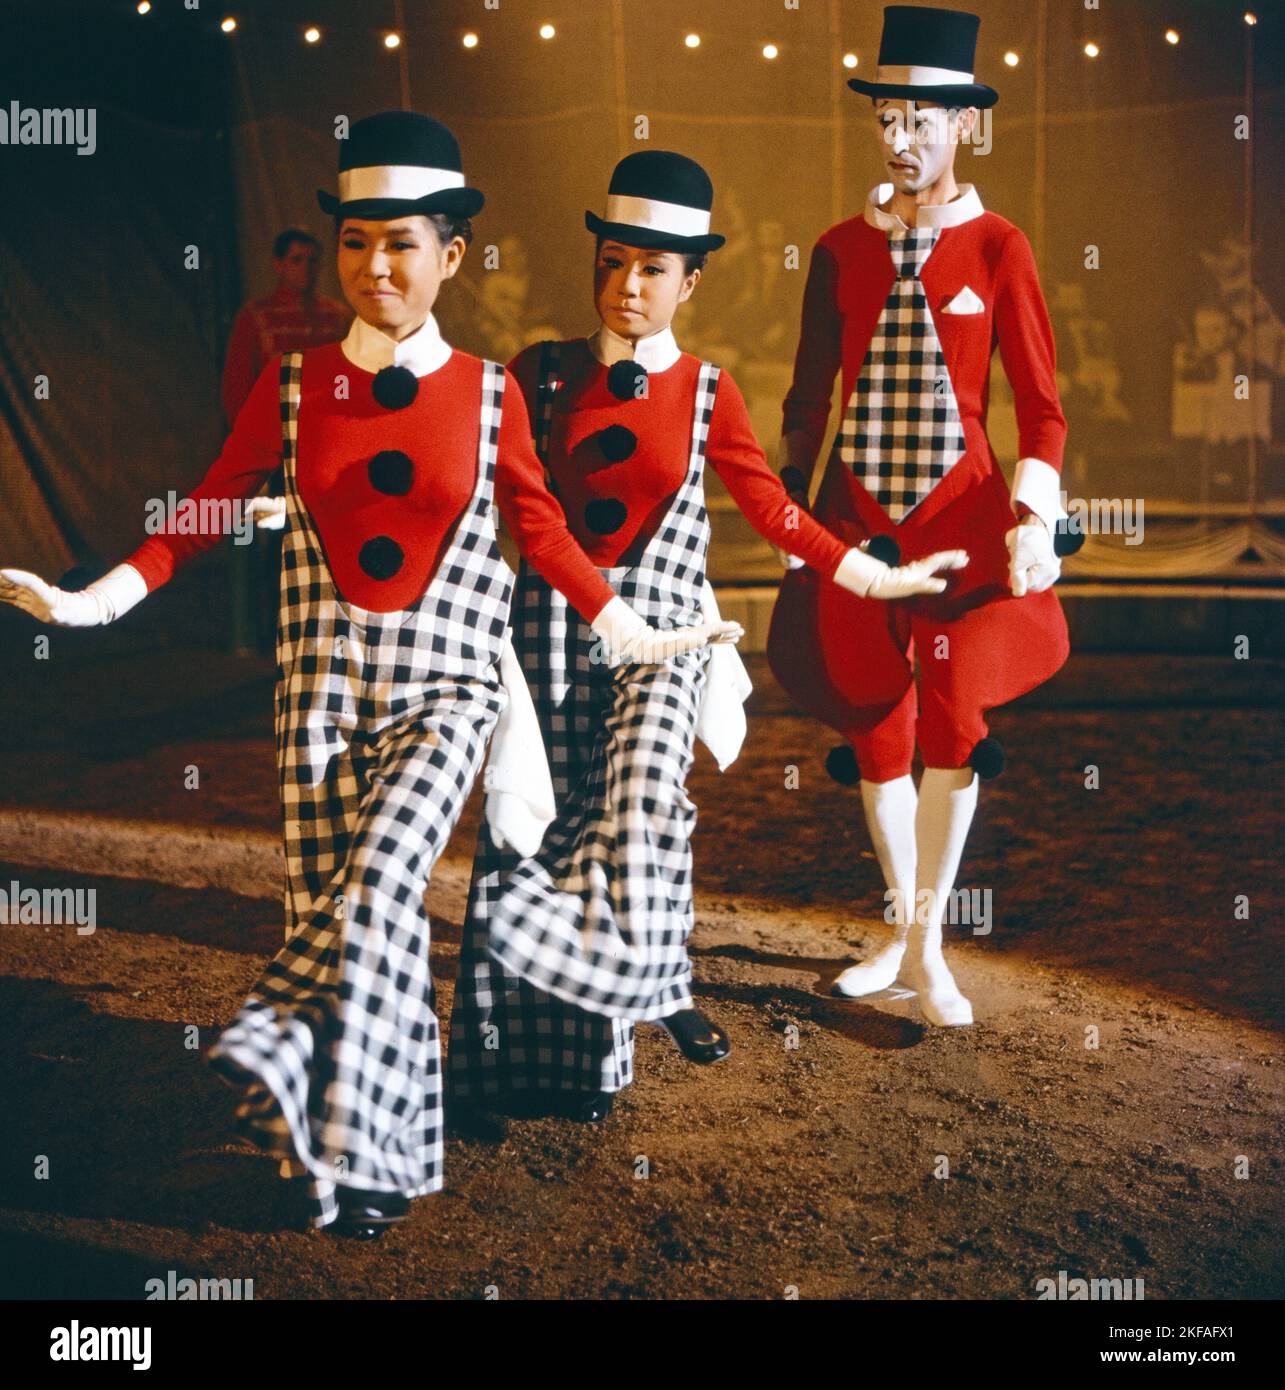 Das Lächeln im Westen, Fernsehfilm, Deutschland 1964, Regie: Michael Pfleghar, Darsteller: Silvio Franceso (rechts) mit EMI und Yumi Ito Foto Stock